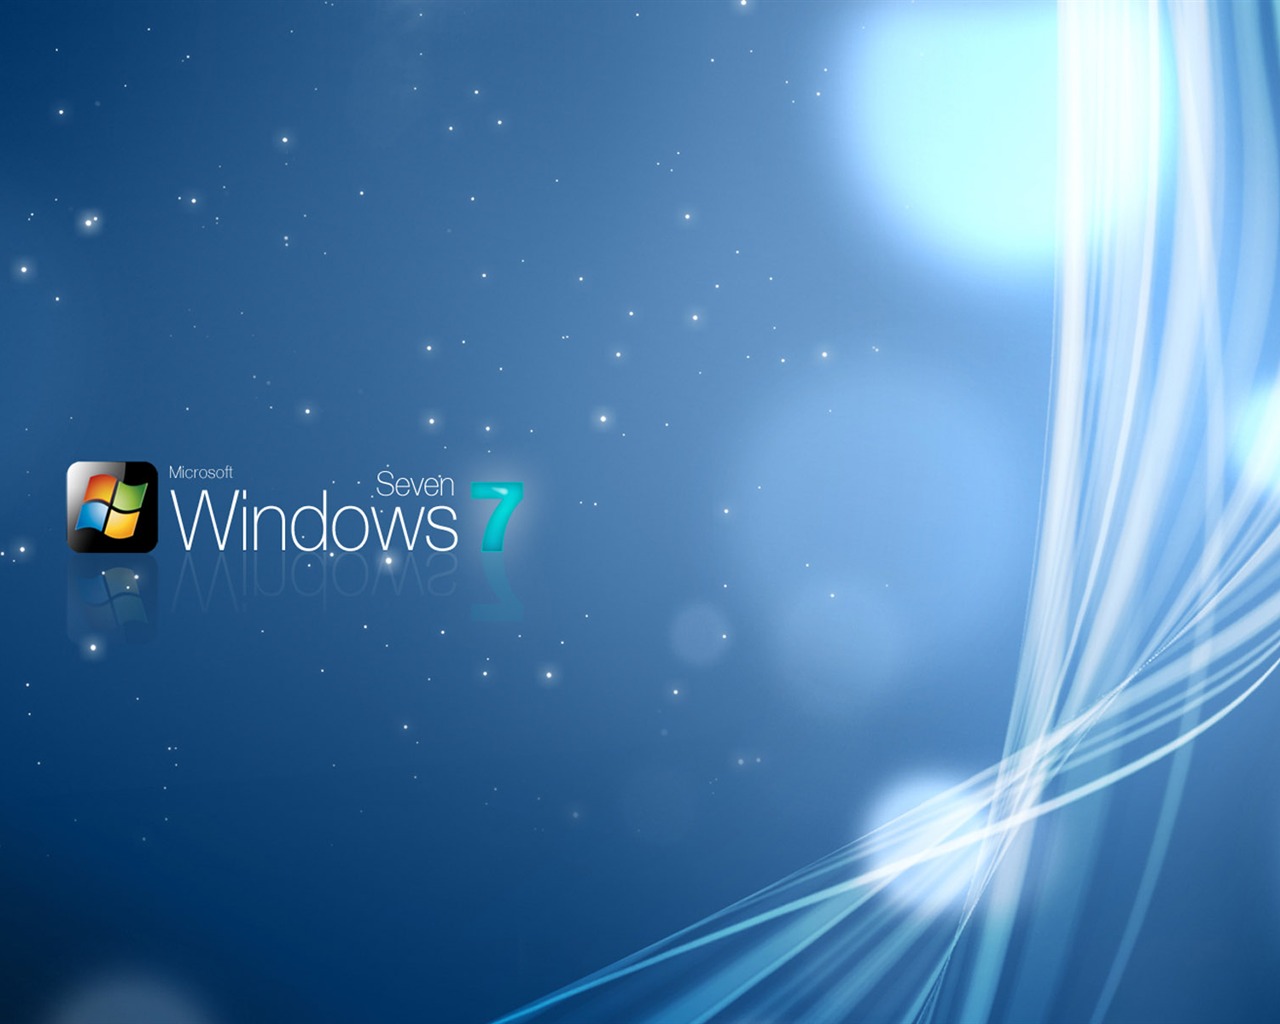 Windows7 theme wallpaper (2) #7 - 1280x1024